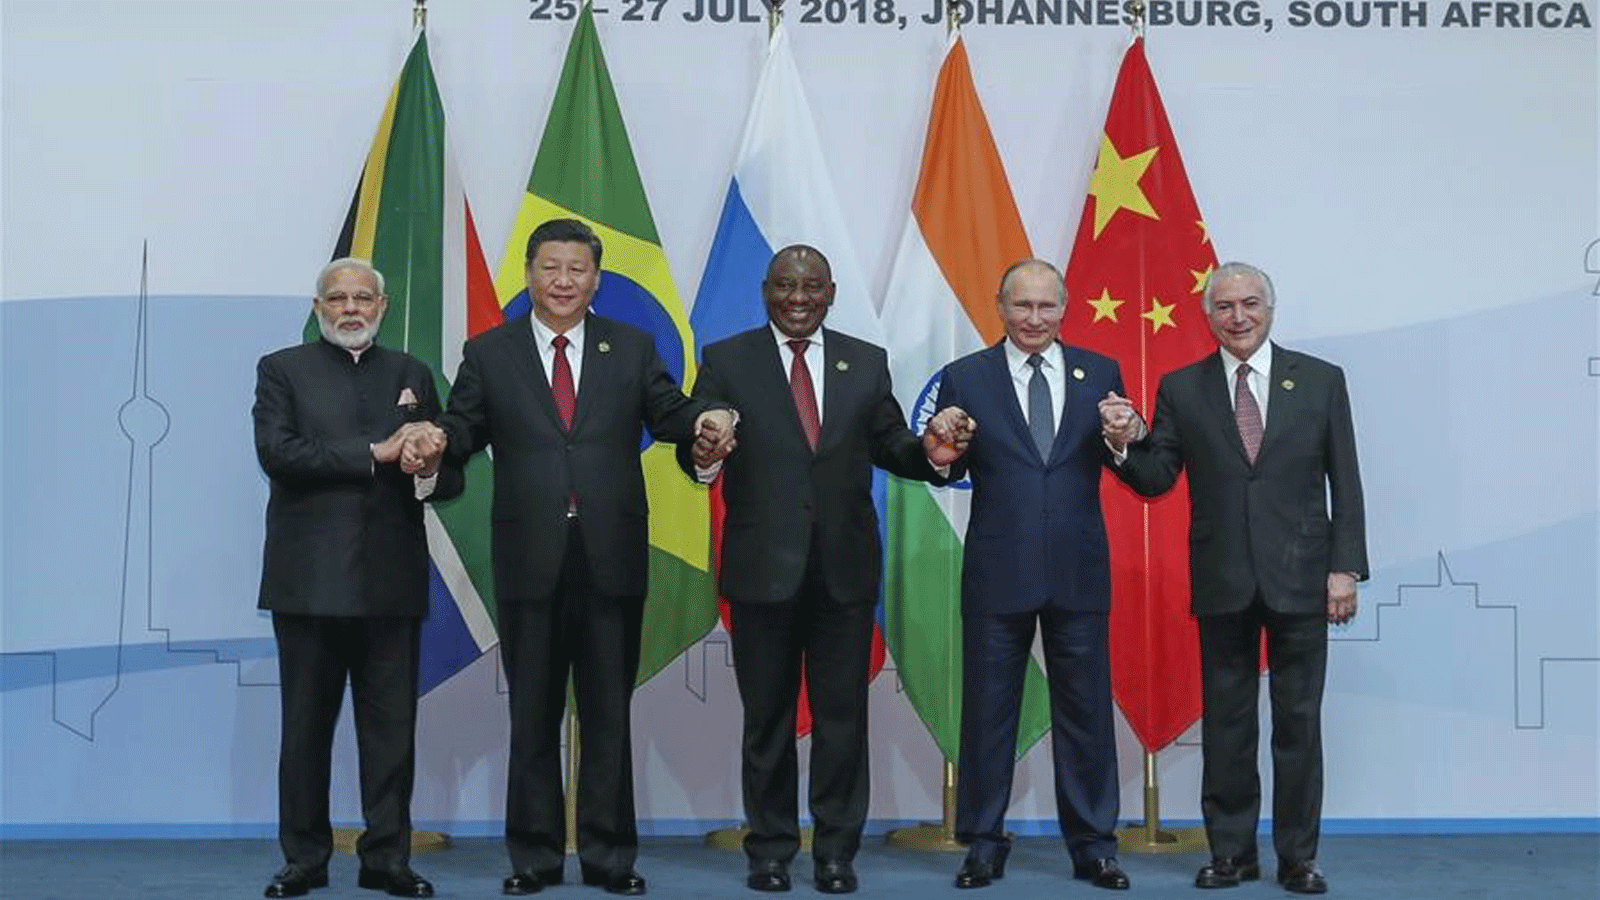 صورة أرشيفية تُظهر الرئيس الصيني شي جين بينغ (الثاني من اليسار) والرئيس البرازيلي(آنذاك) ميشيل تامر (الأول إلى اليمين) والرئيس الروسي فلاديمير بوتين (الثاني إلى اليمين) ورئيس الوزراء الهندي ناريندرا مودي (الأول من اليسار) ورئيس جنوب أفريقيا سيريل رامافوزا في صورة جماعية خلال الجلسة العامة الدورة العاشرة لقمة البريكس في جوهانسبرغ، جنوب أفريقيا. 26 تموز\ يوليو 2018 (شينخوا)